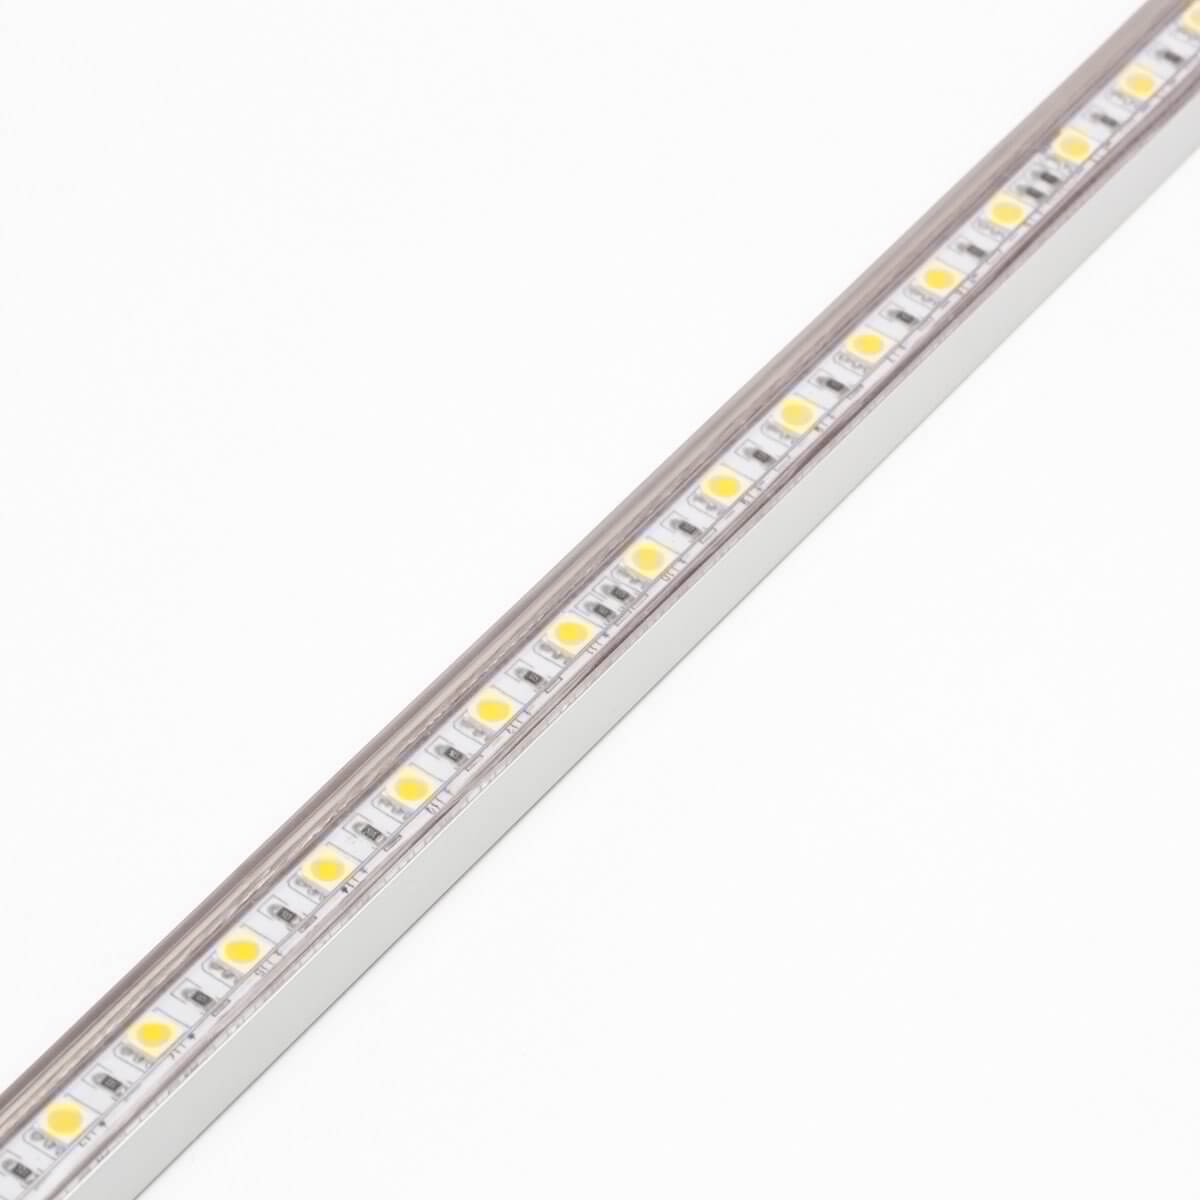 Premium Aluminum LED Channel, LED Strip Supplier